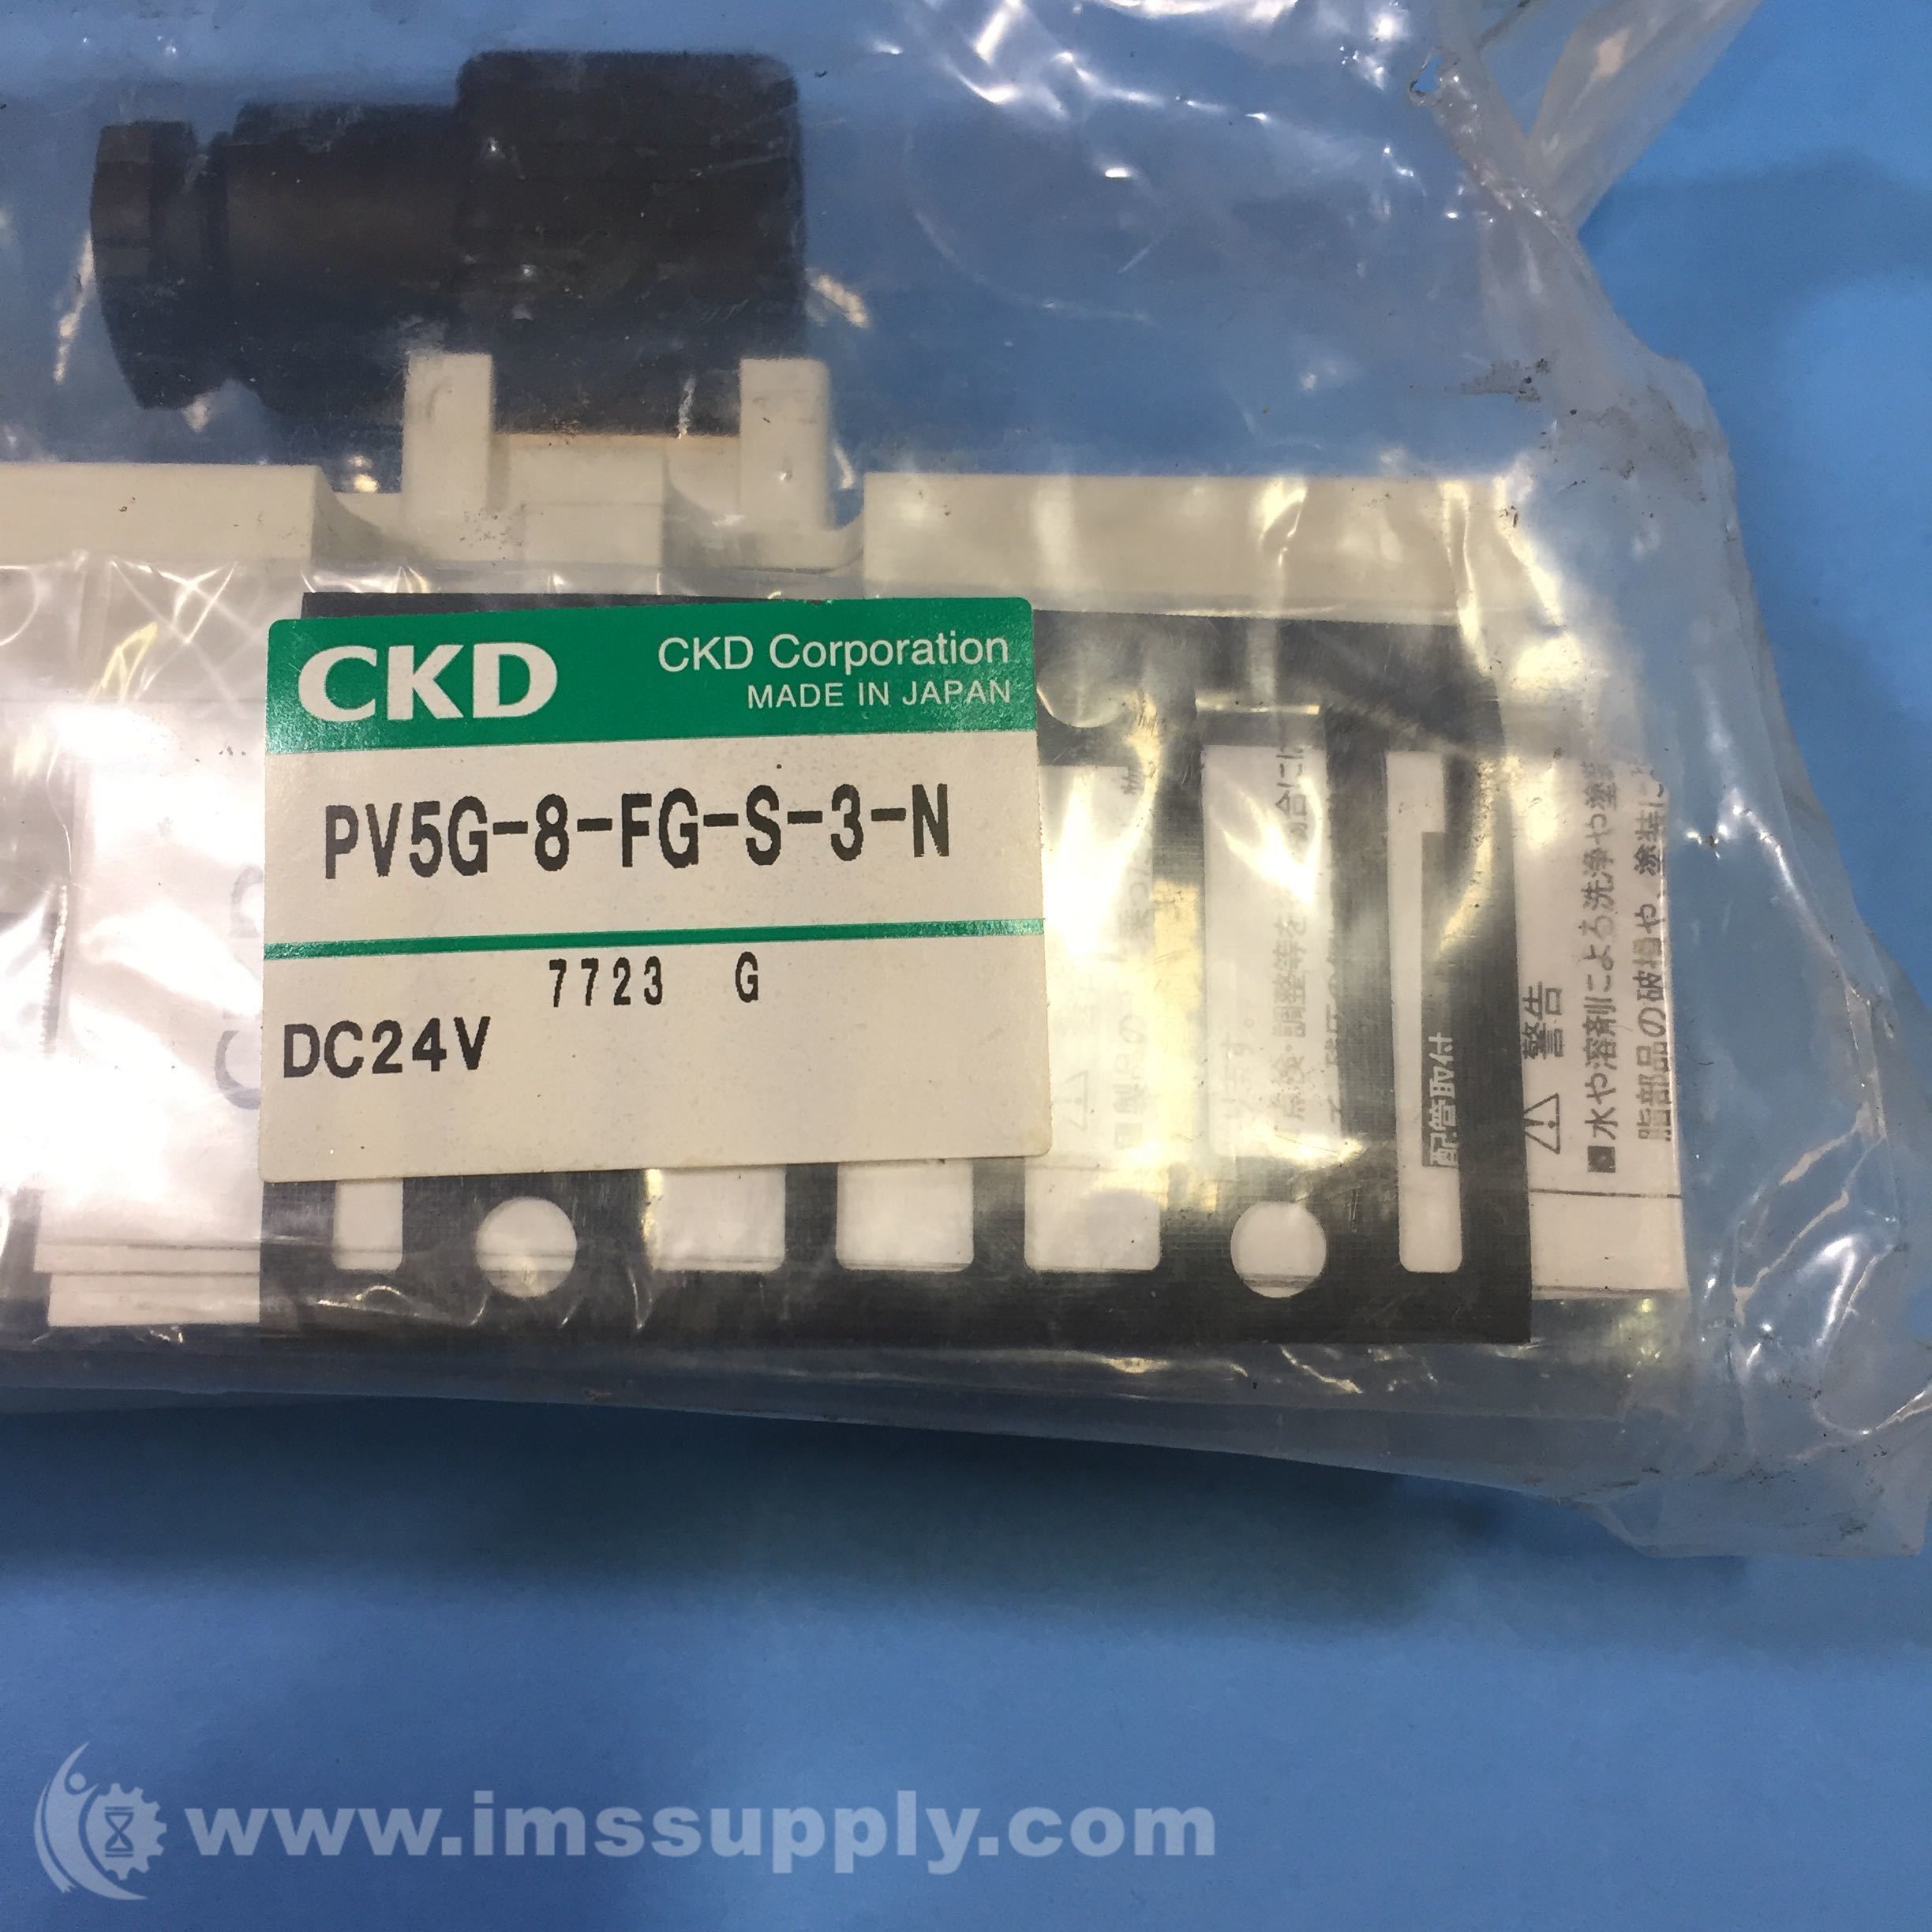 CKD PV20G 20 FG S 20 N Solenoid Valve   IMS Supply